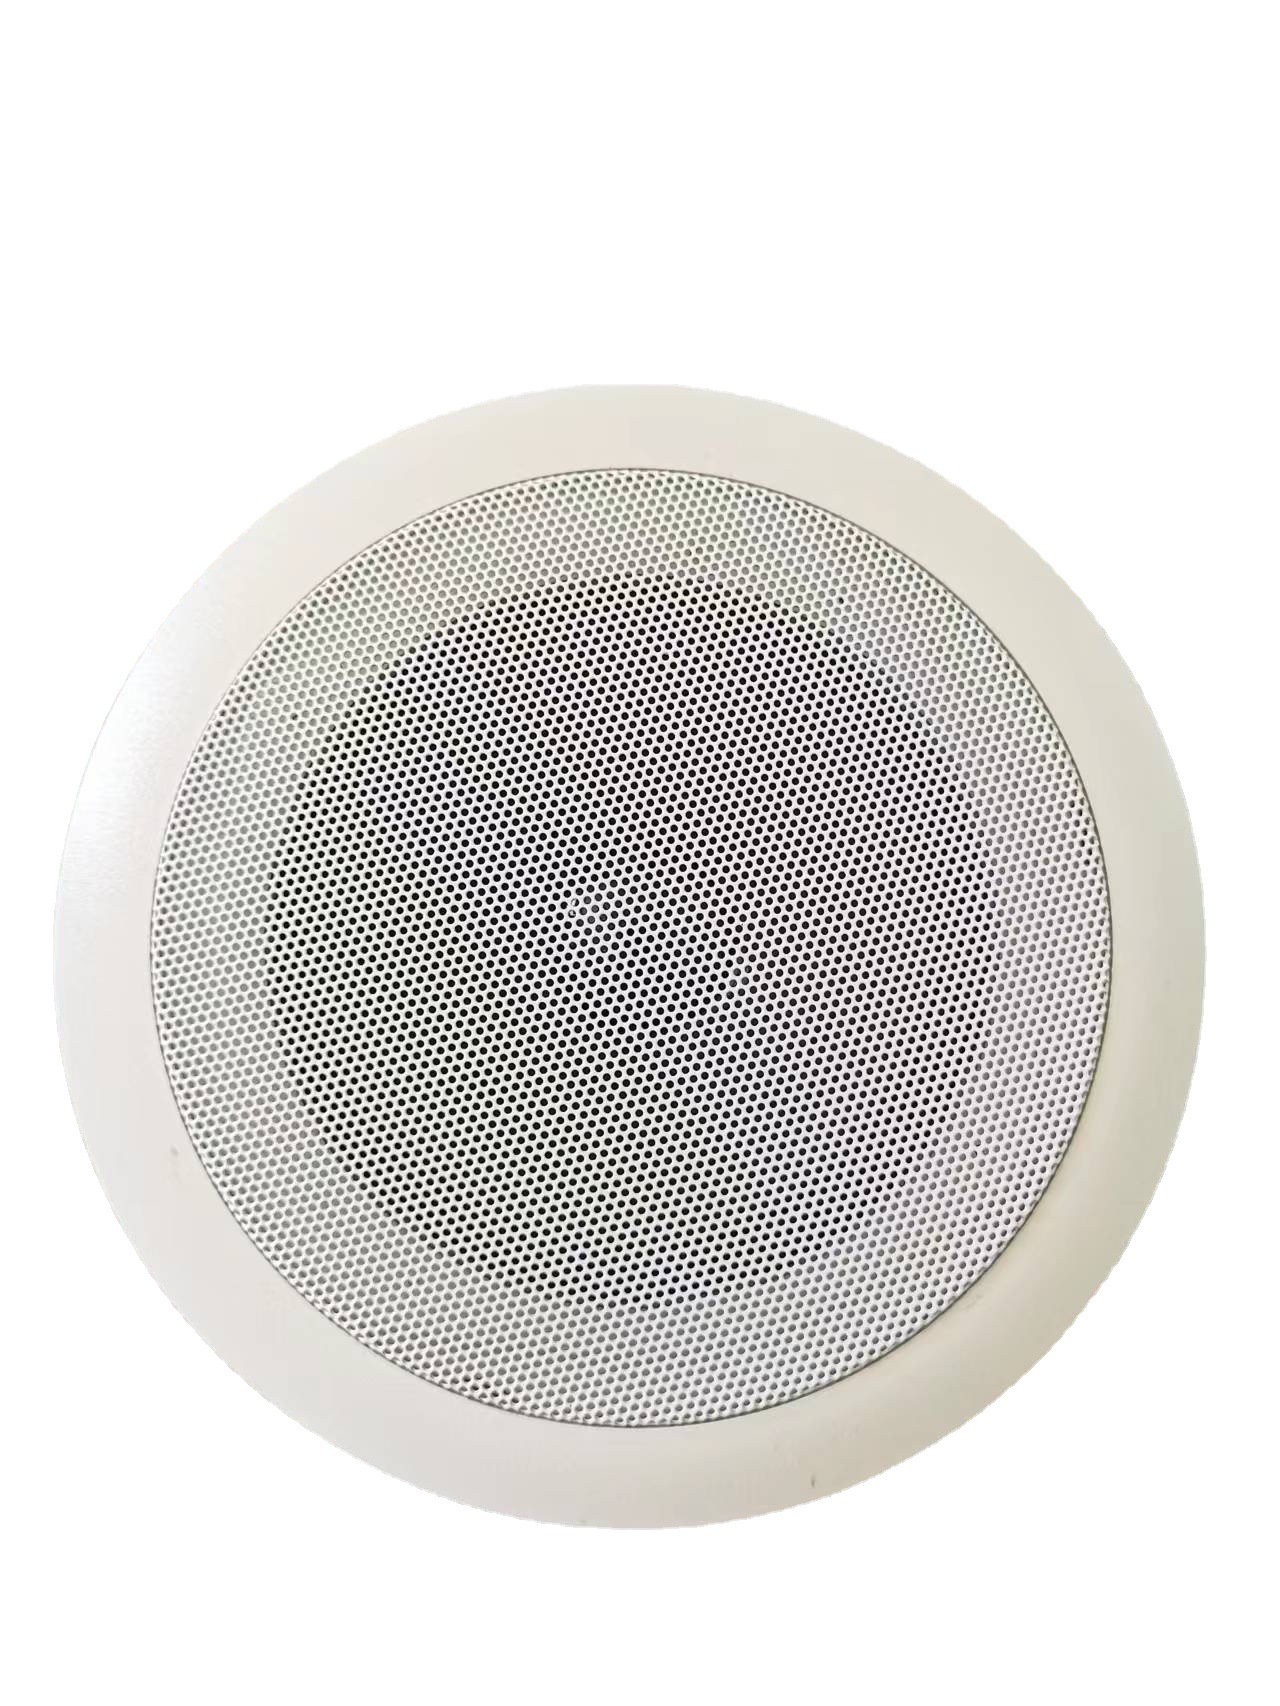 厂家供应优质天花音箱ABS塑料材质天花吸顶喇叭 定制室内吸顶音响